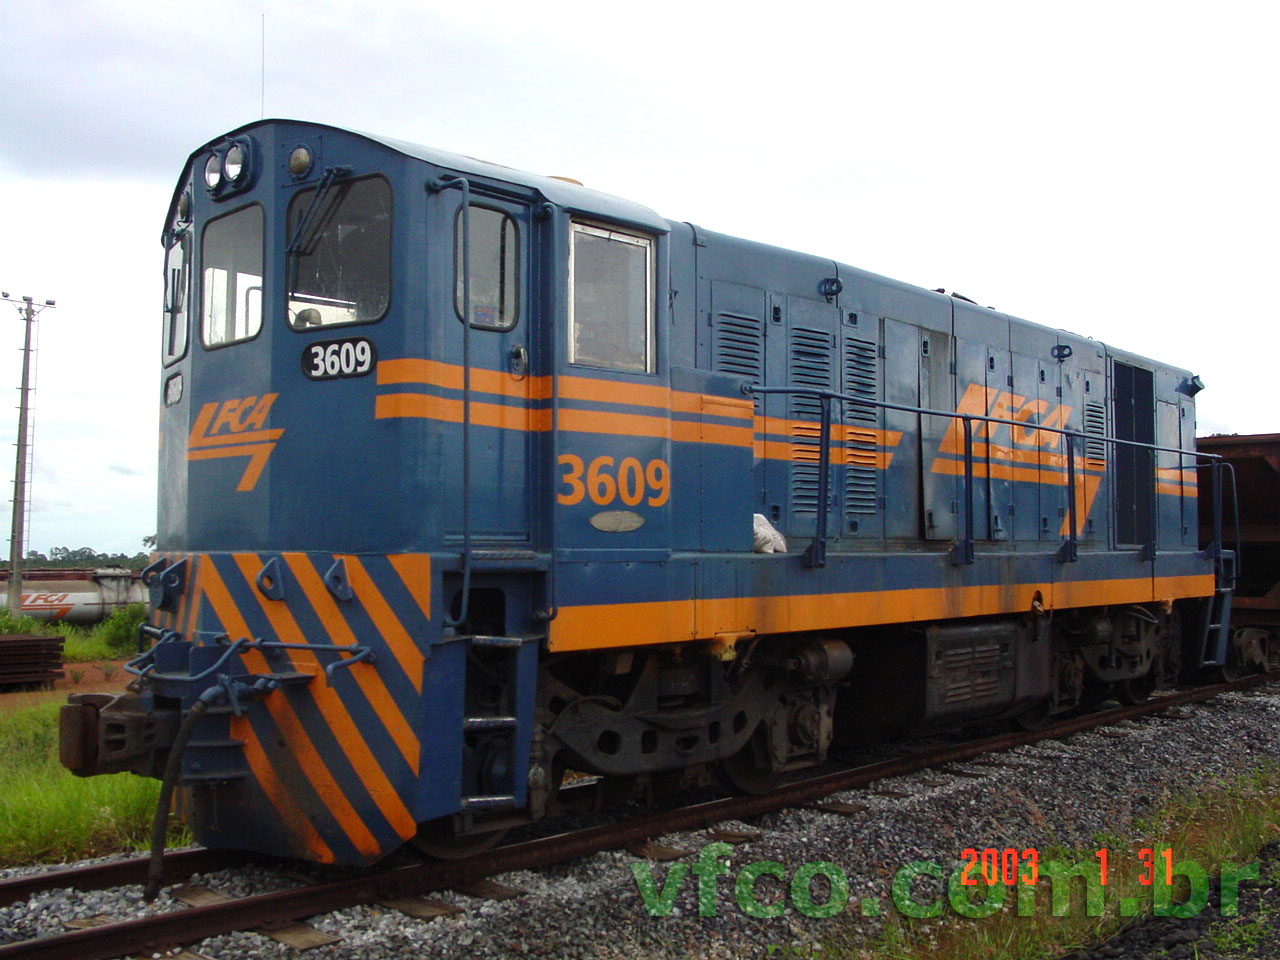 Frente e ateral da locomotiva GL8 nº 3609 da FCA - Ferrovia Centro-Atlântica